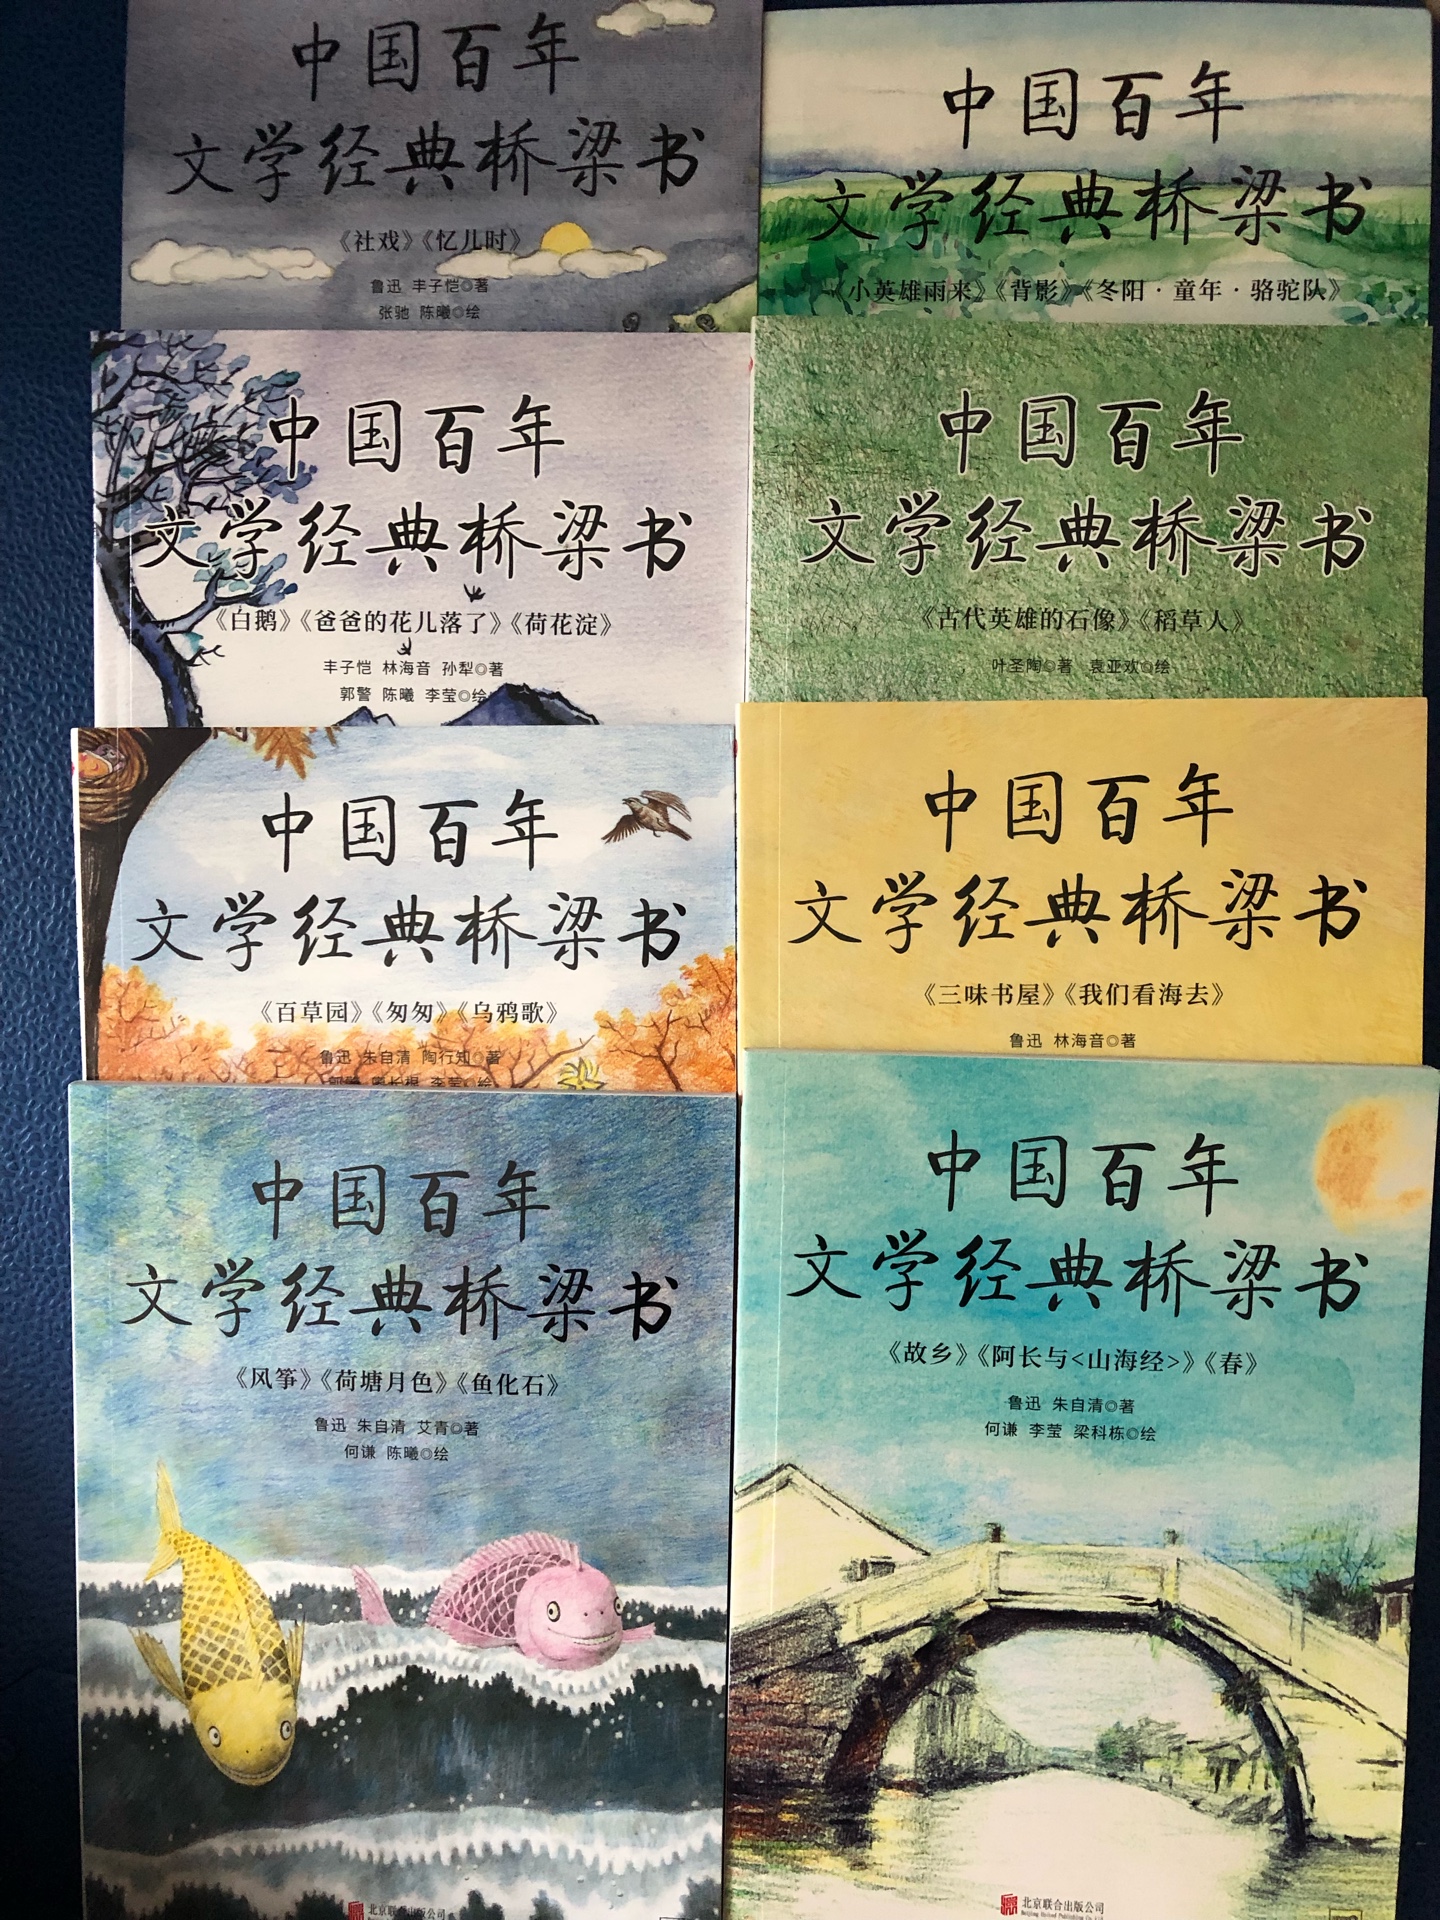 图文并茂。一直给孩子找桥梁书。都是外国的。这套是经典的中国文学。值得推荐。内容比较适合二年级孩子以上。毕竟不是儿童文学。